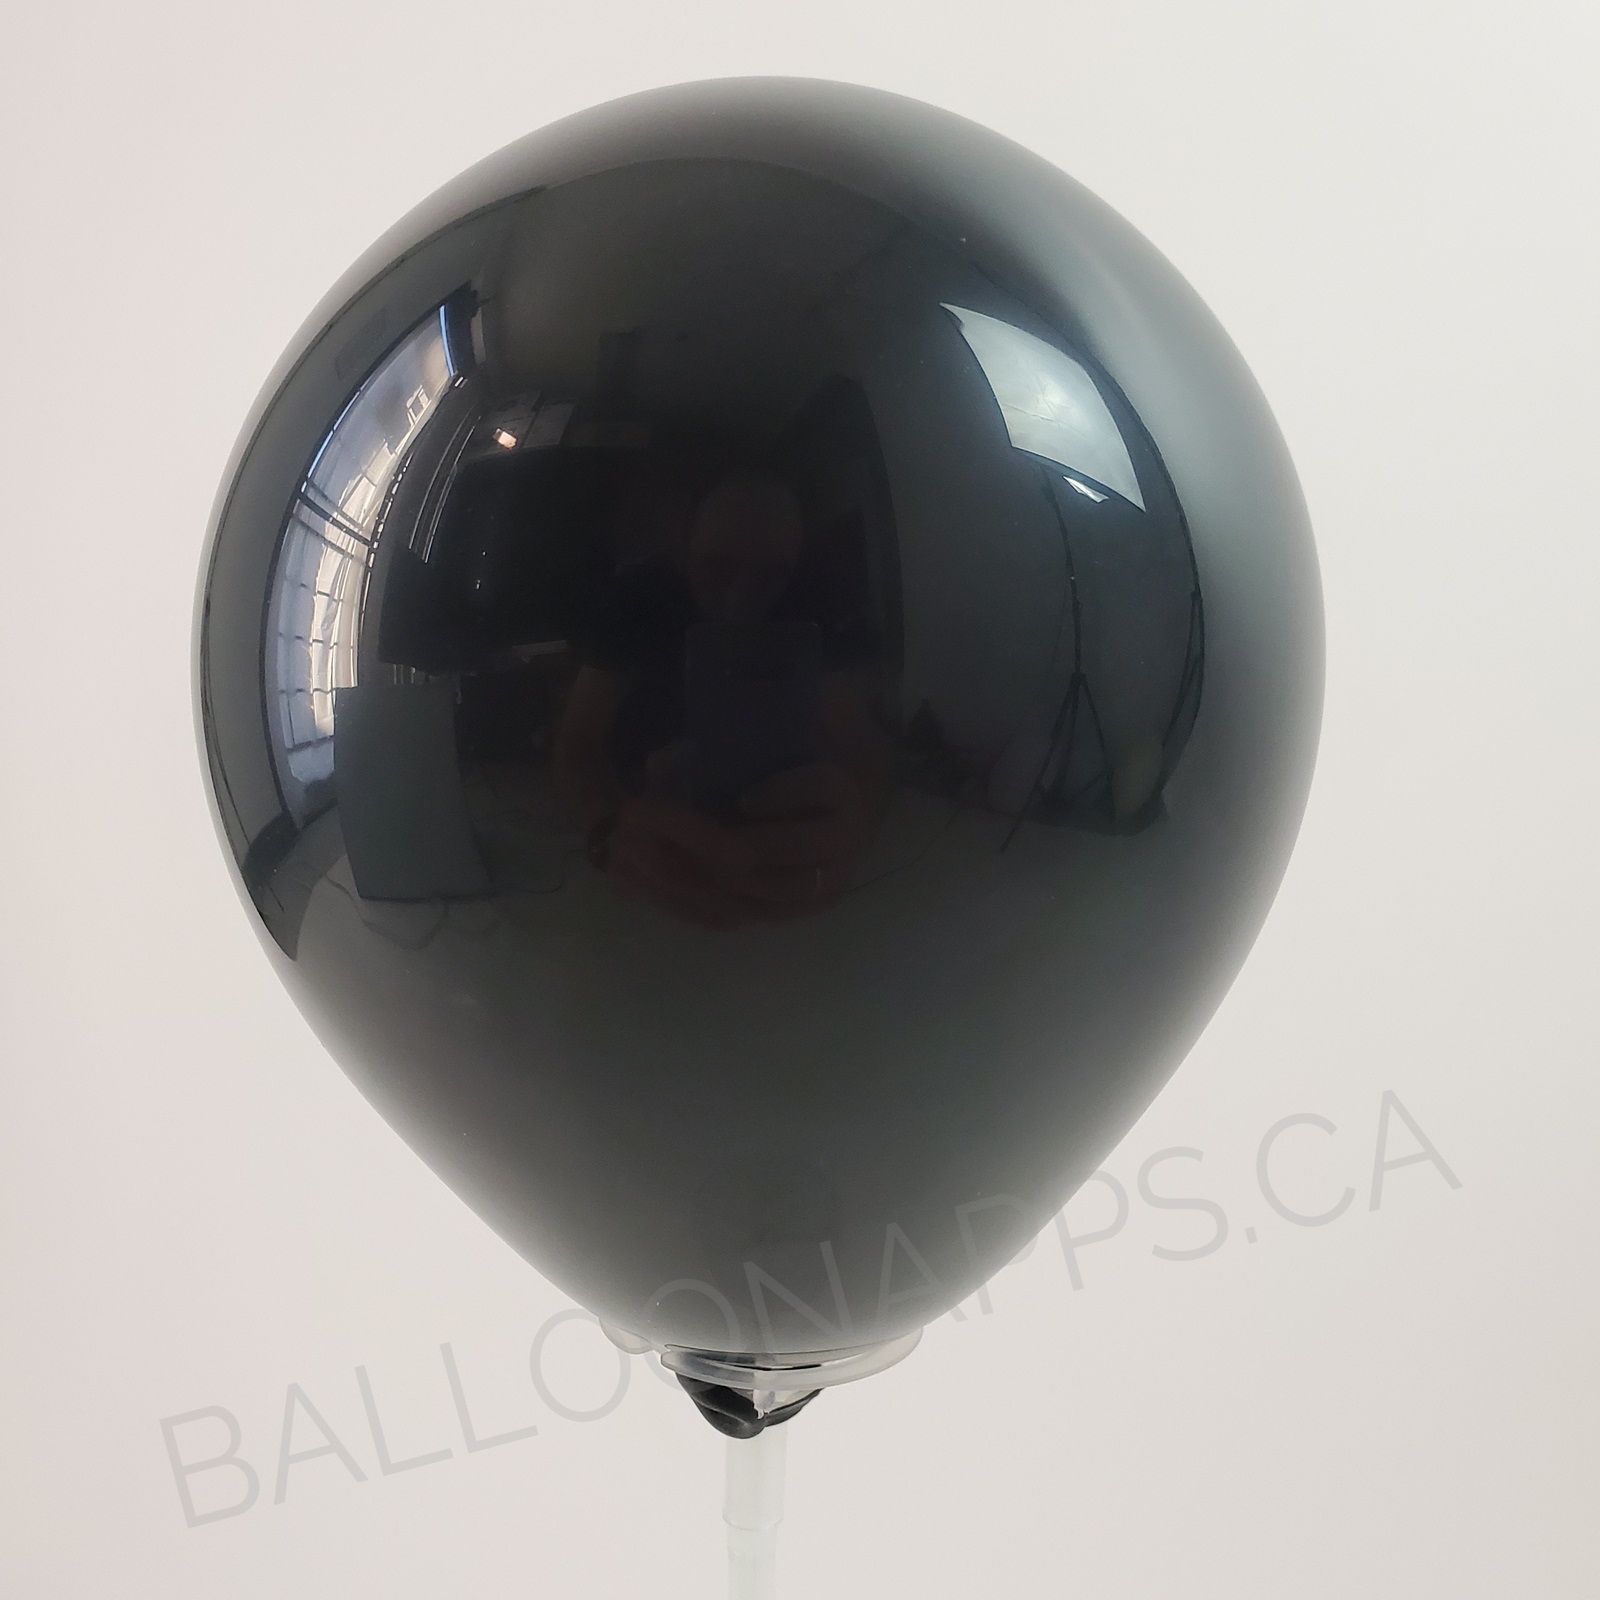 balloon texture (100) 6